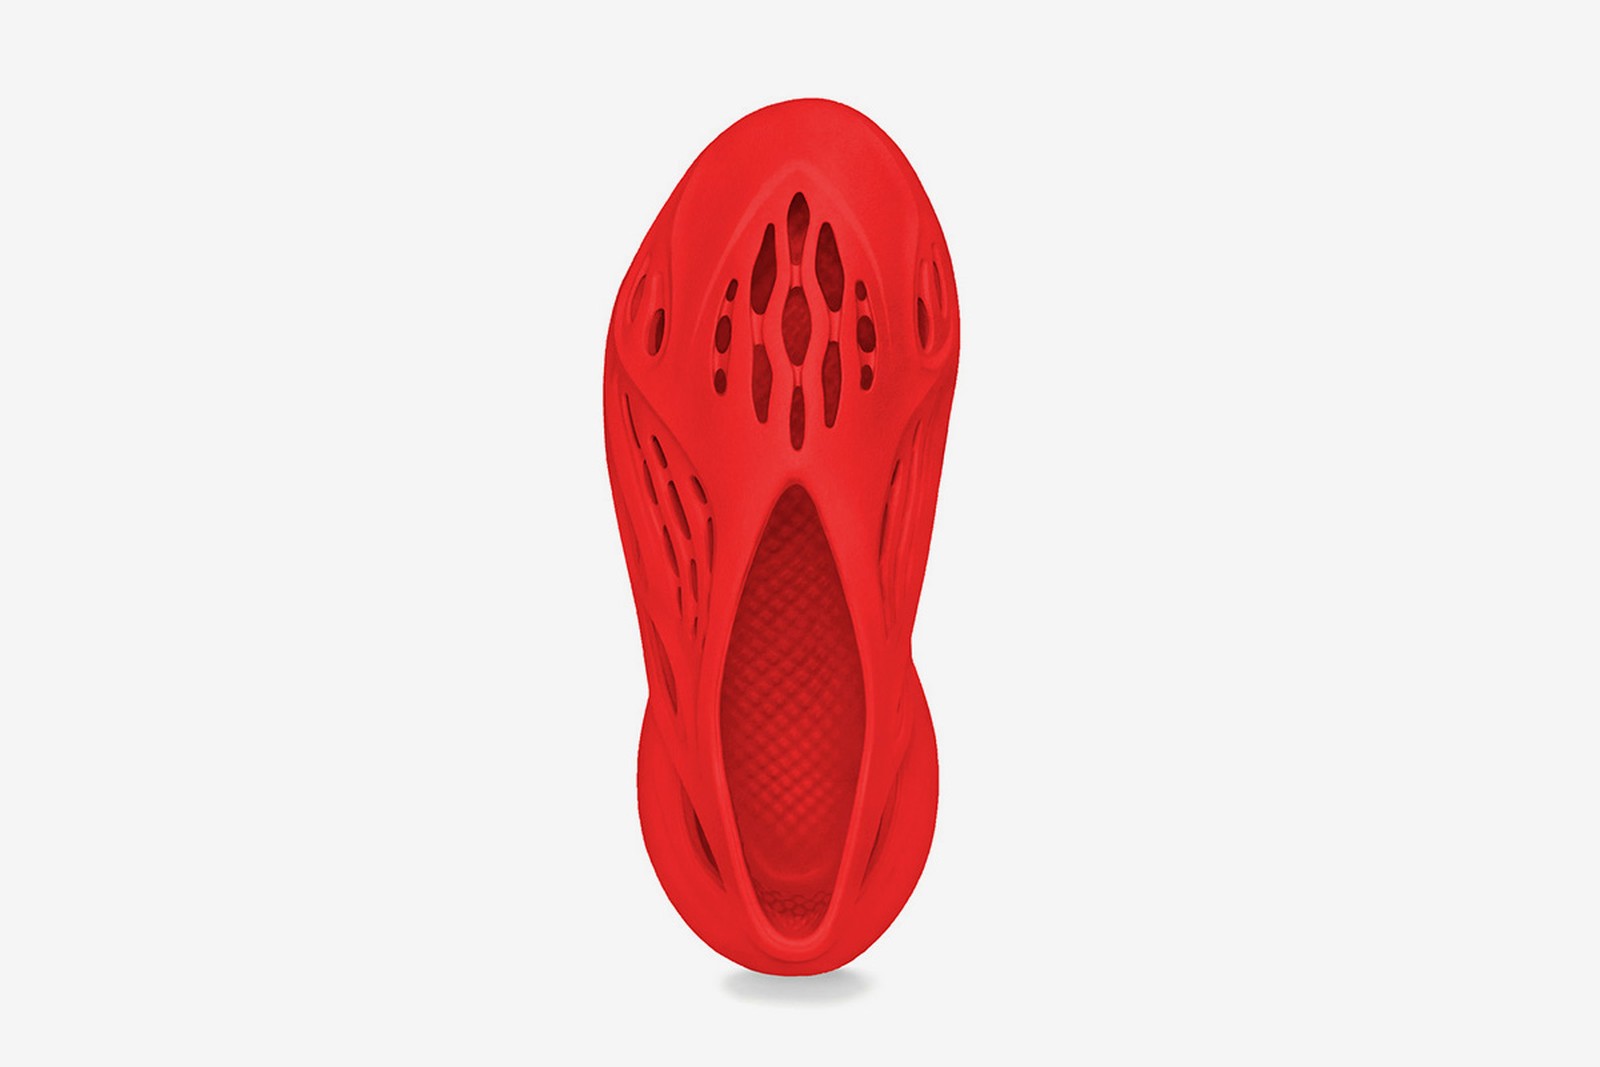 adidas Yeezy Foam Runner Vermilion